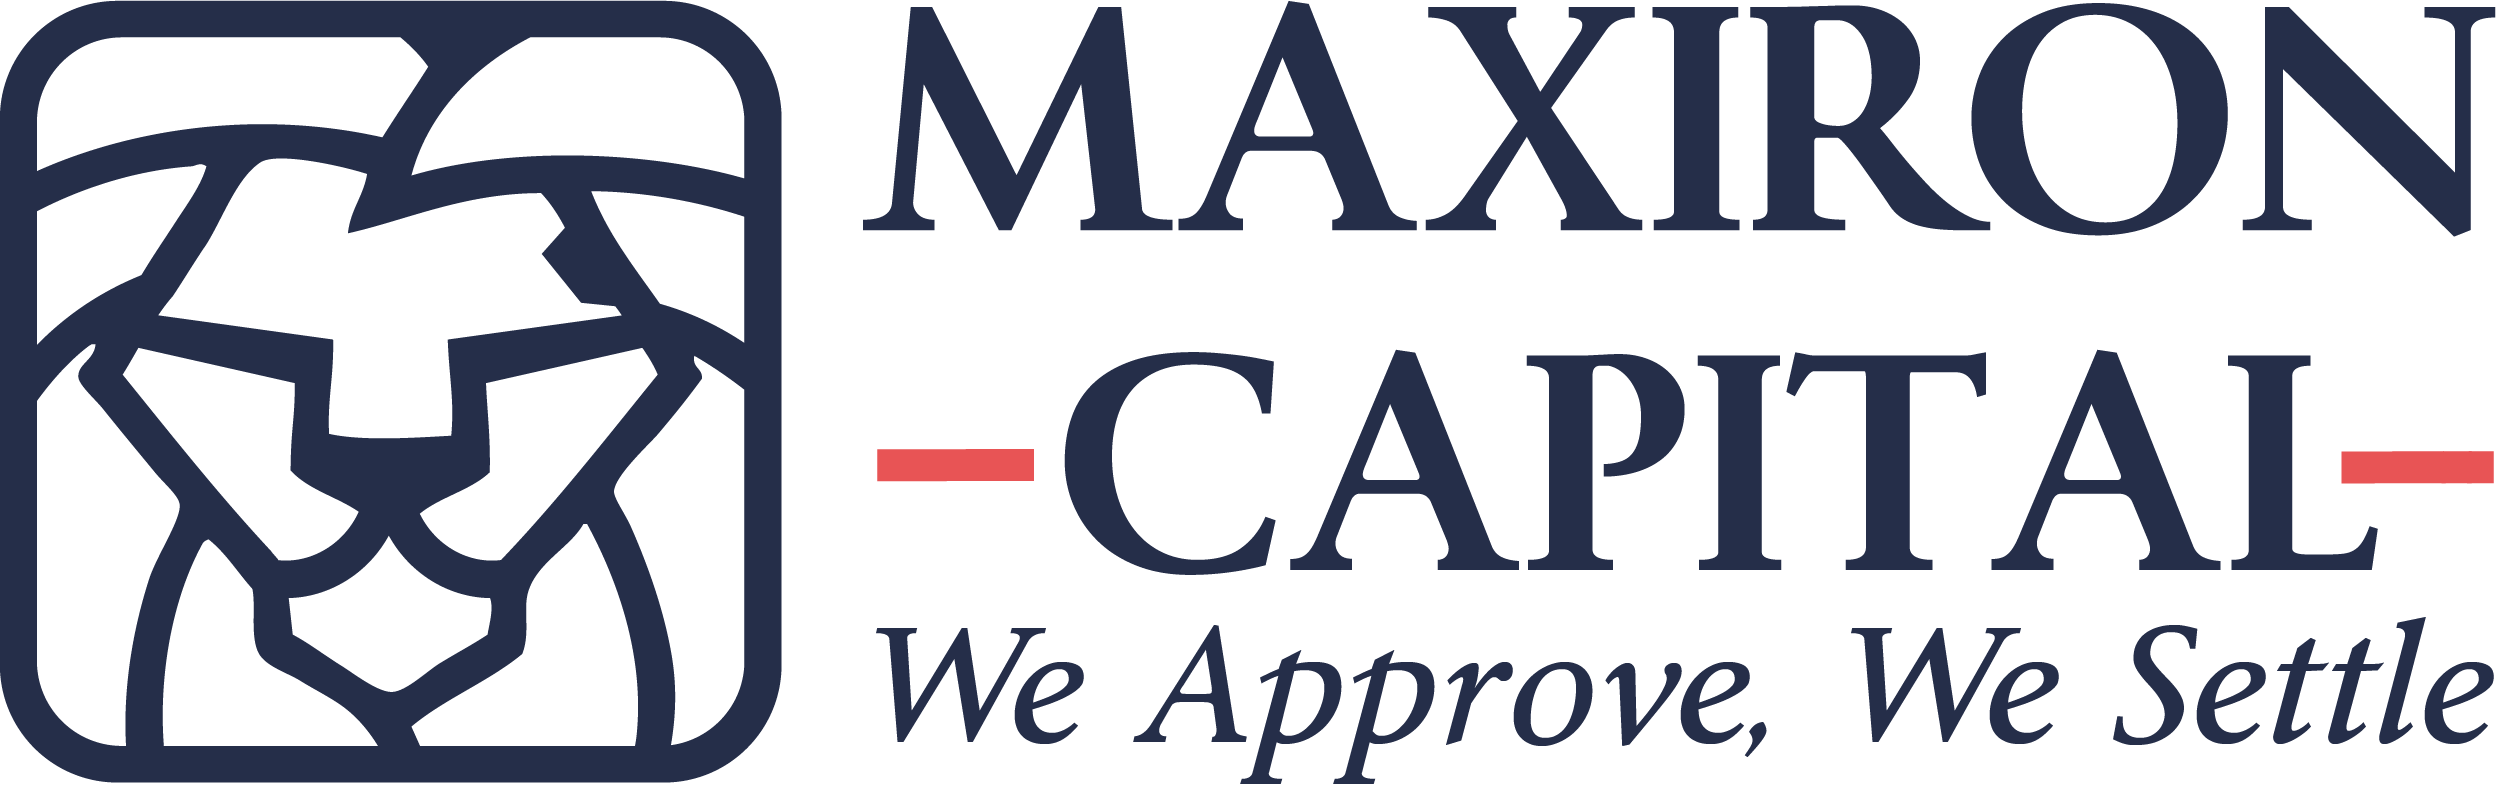 Maxiron Capital